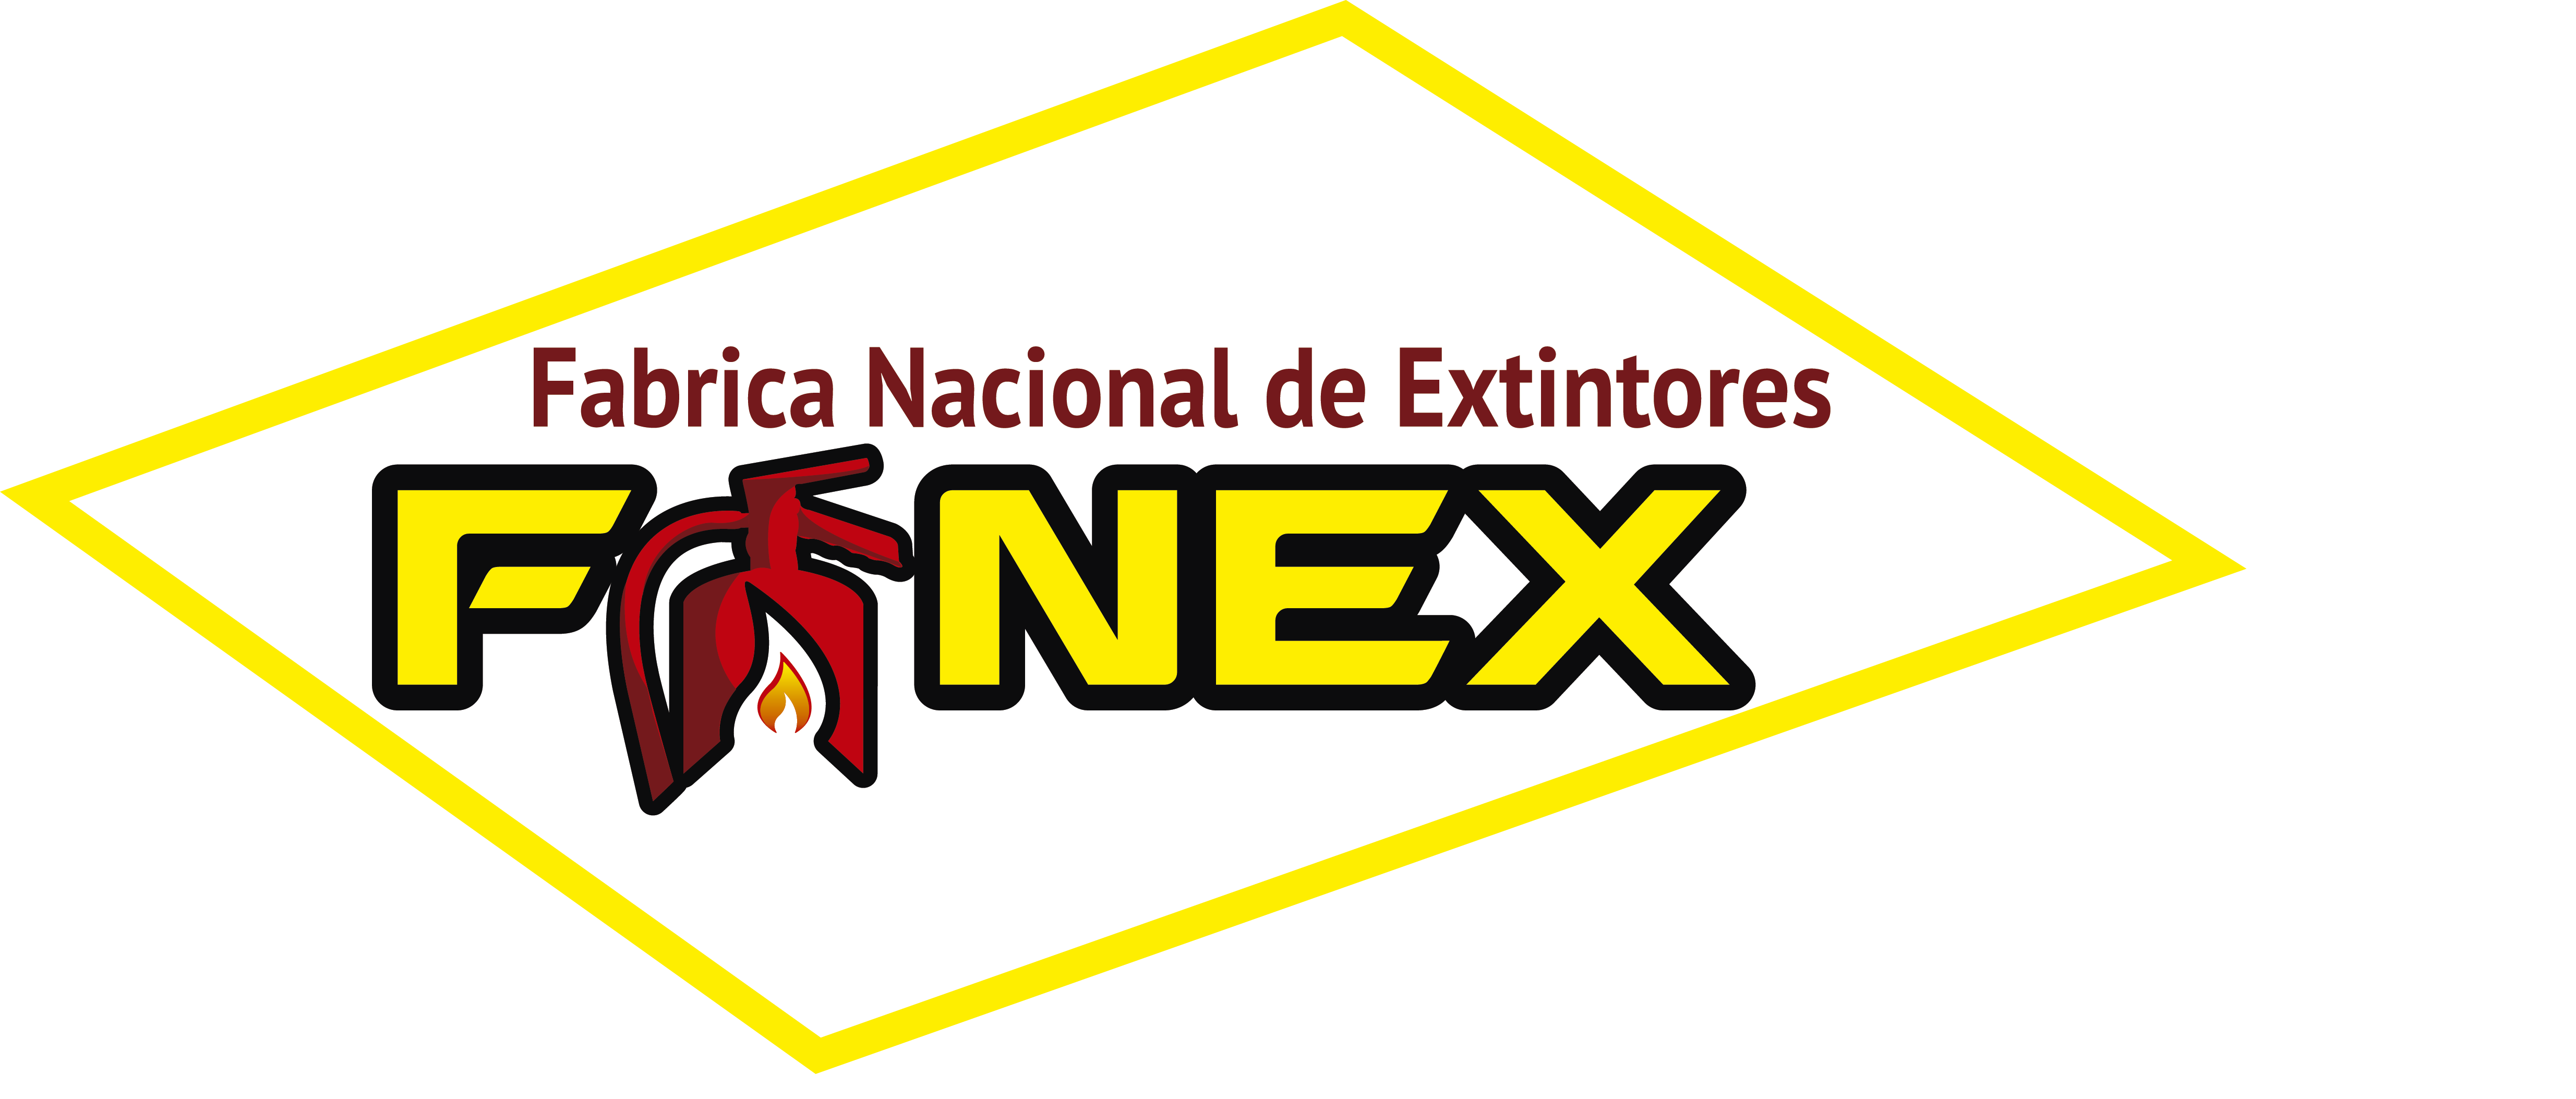 Logo fanex-fanex-fabrica nacional de extintores-extintores-extinguidores